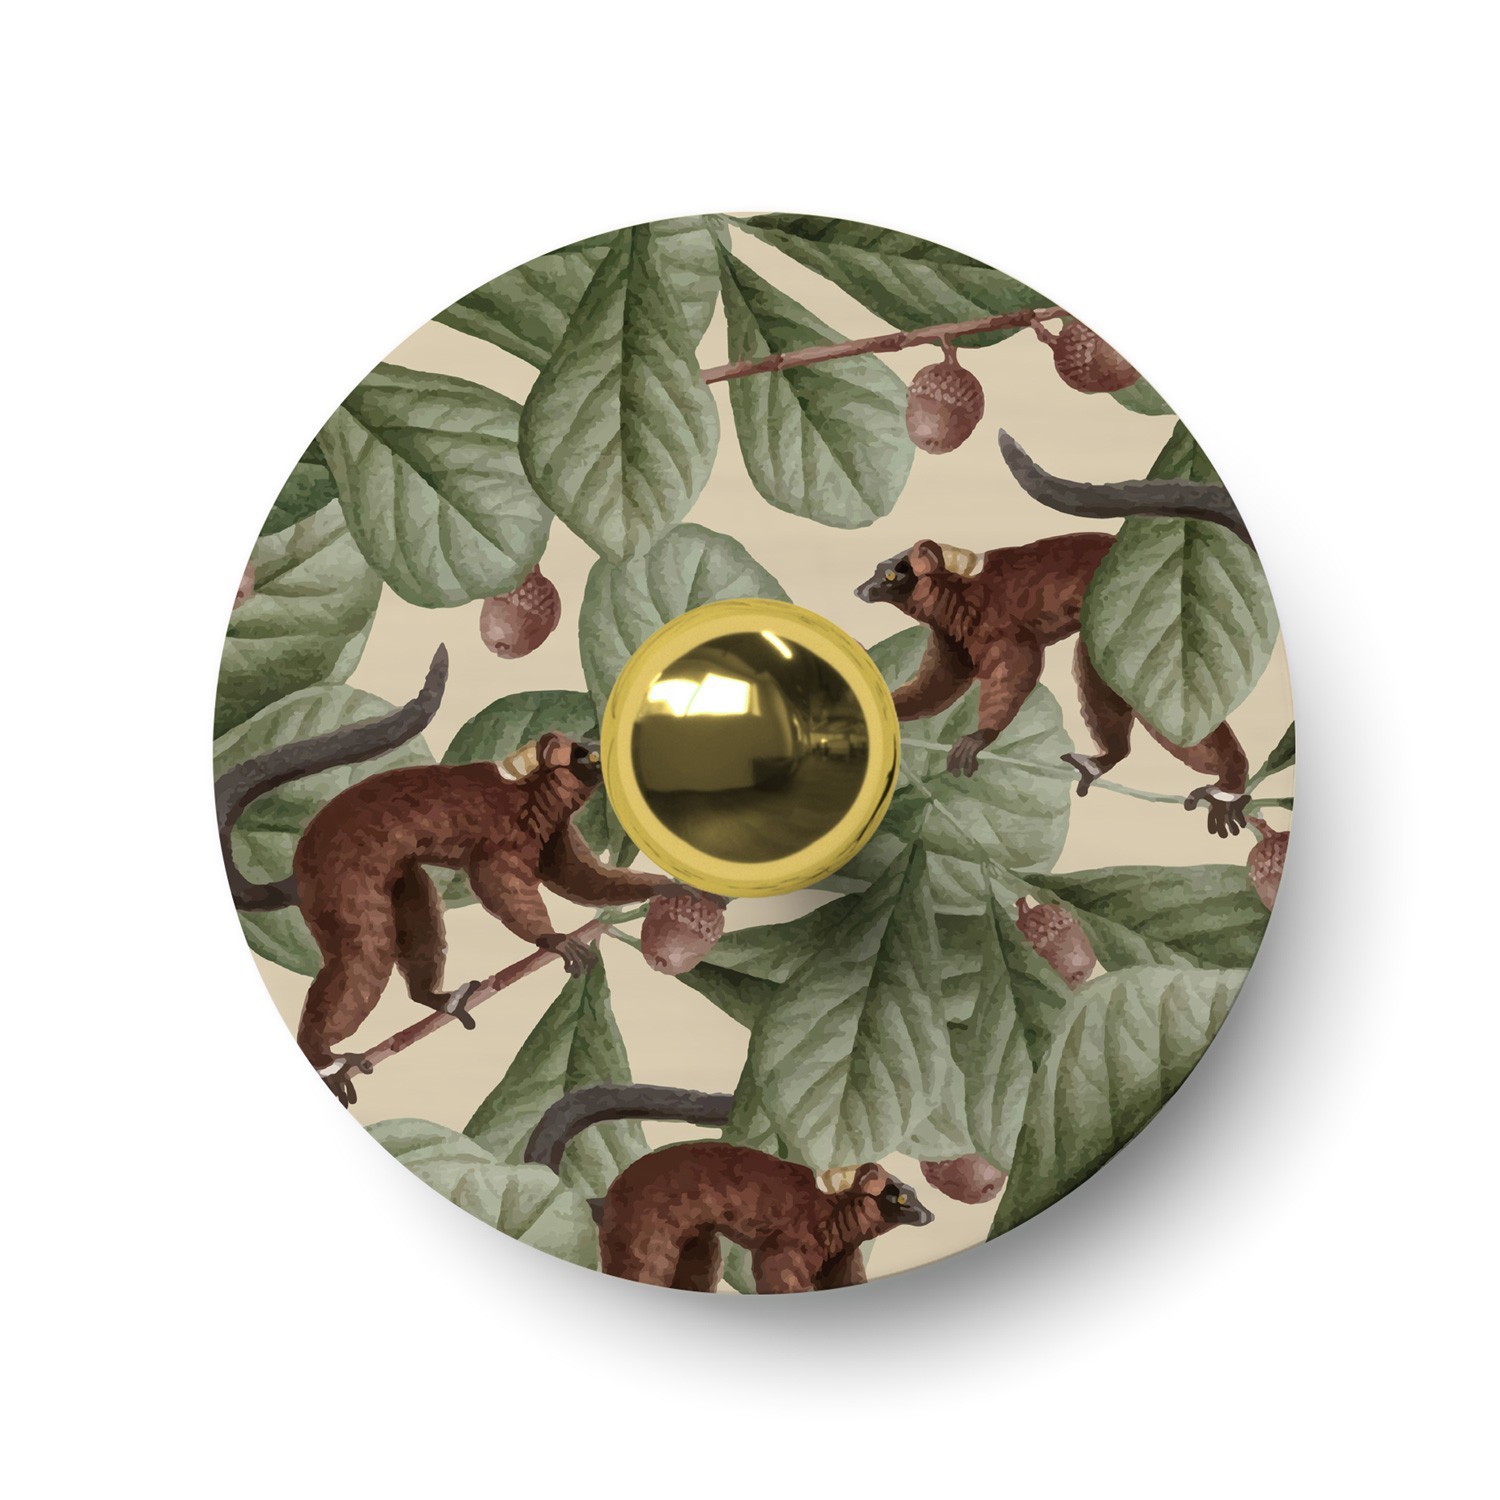 Ellepì mini platte lampenkap met jungle dieren 'Wildlife Whispers', 24 cm diameter - Made in Italy